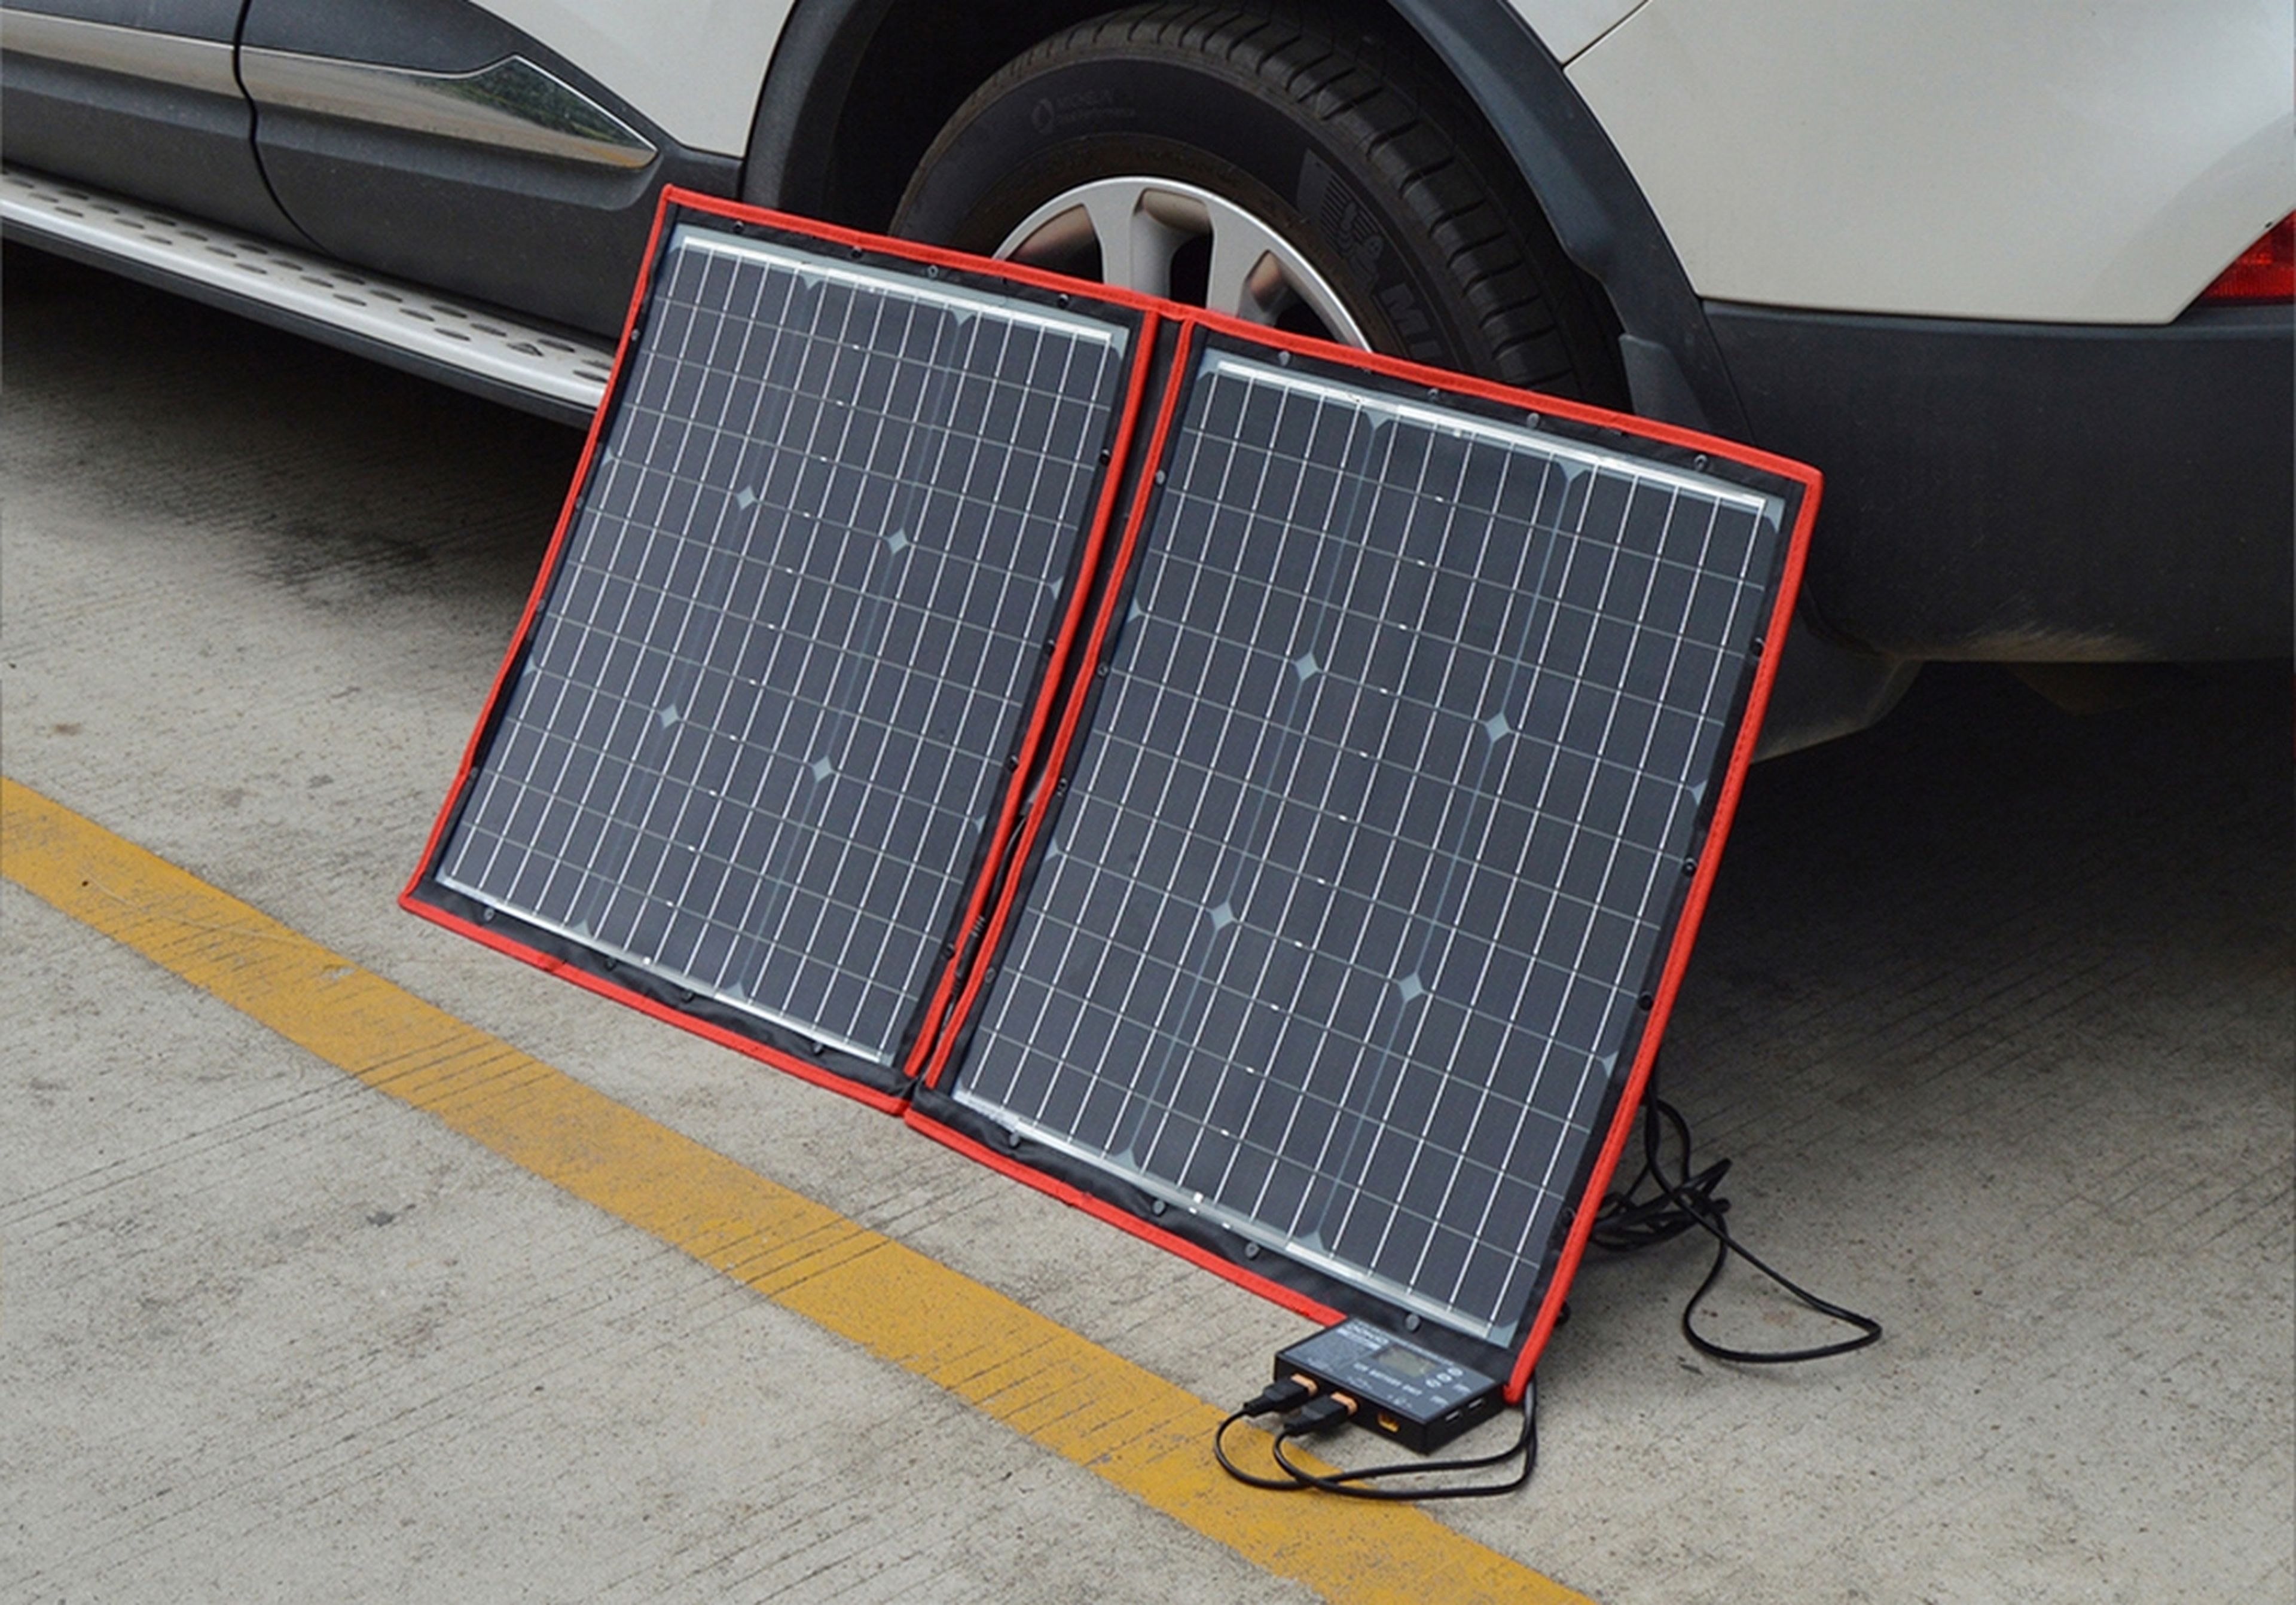 Estos paneles solares plegables y portátiles, a partir de 110 euros, pueden hacerte ahora mucho dinero en la factura de la luz